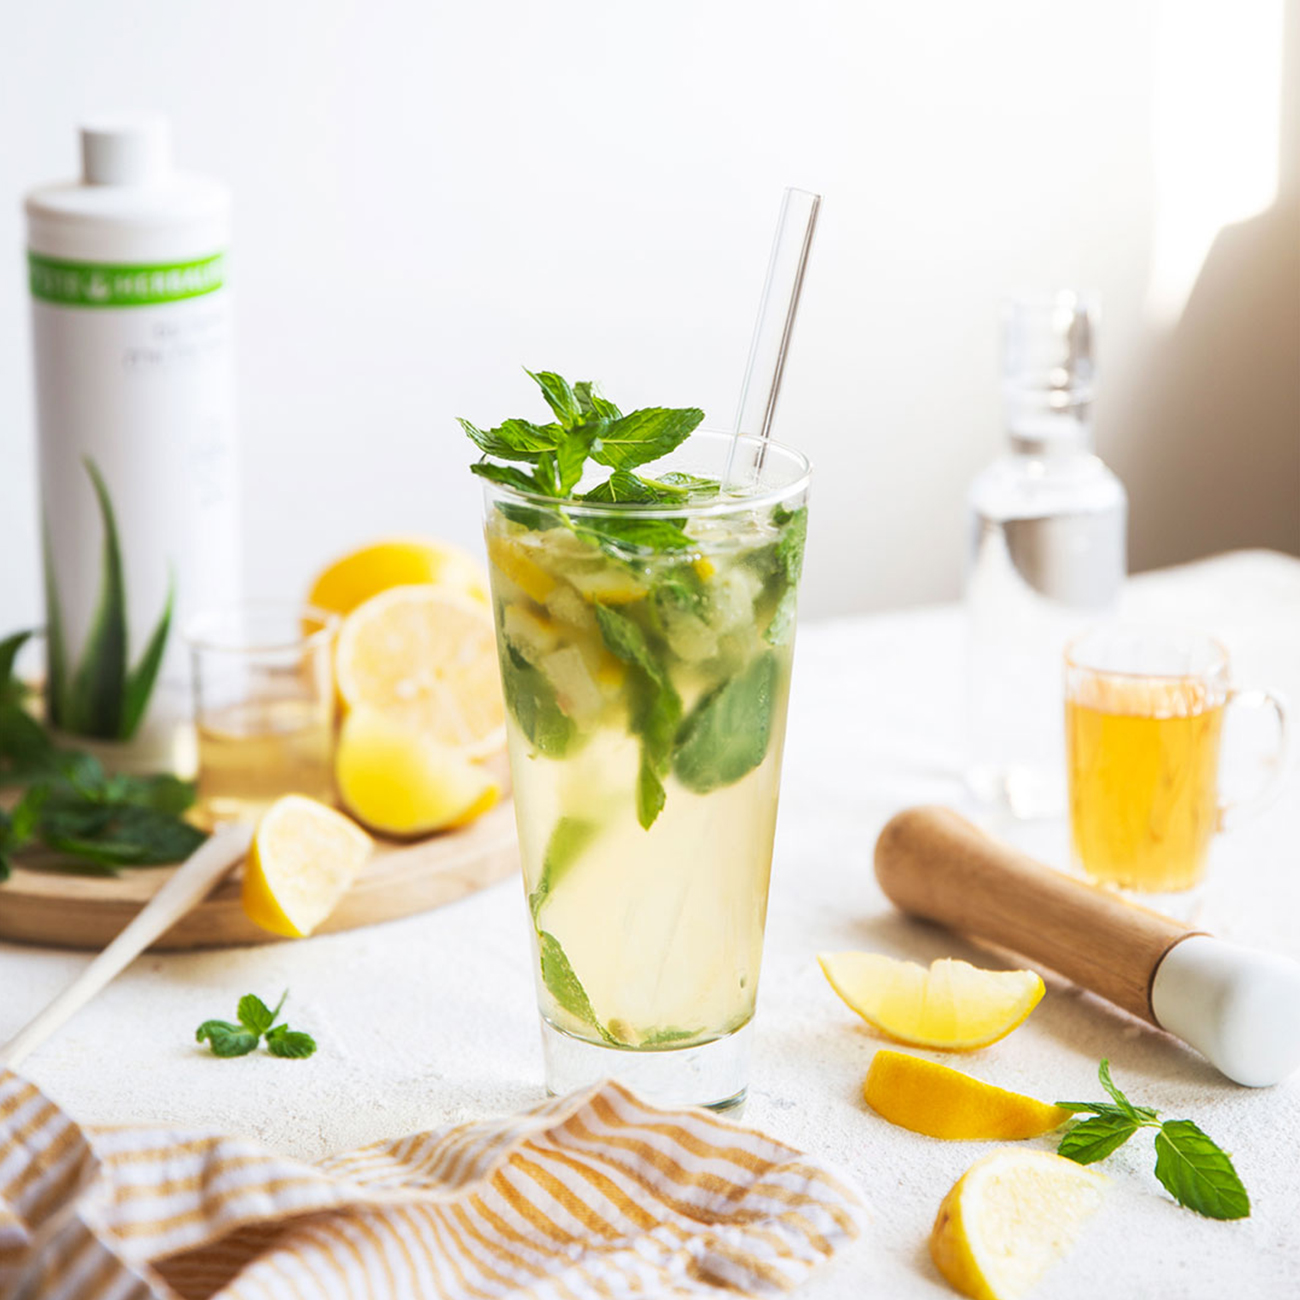 čaša osvežavajućeg herbalife nutrition napitka biljnog koncentrata aloje sa dodatim limunom i nanom.